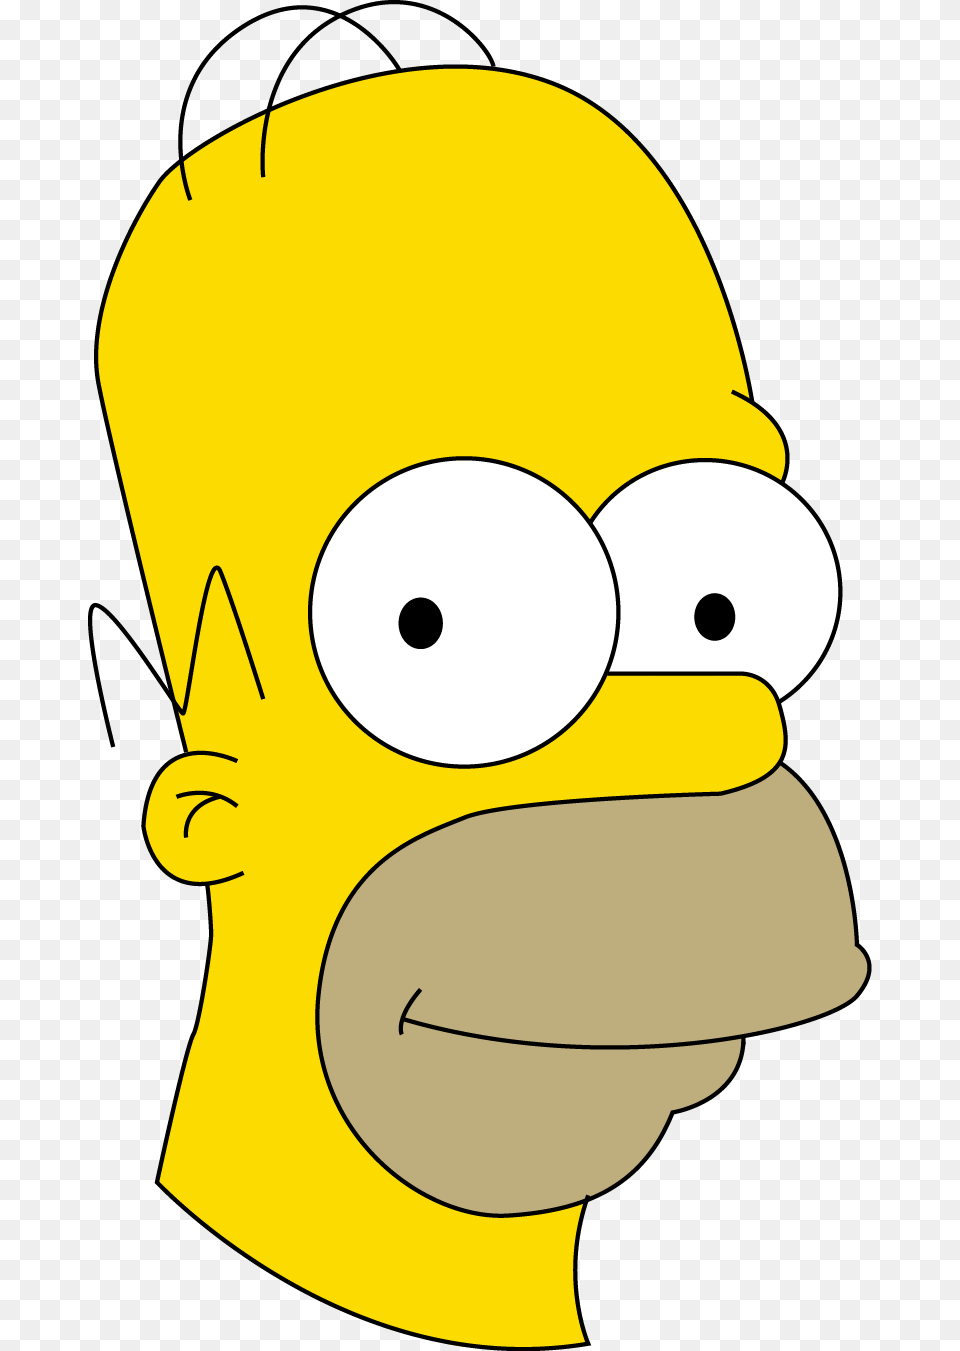 Simpsons, Cartoon, Clothing, Hardhat, Helmet Png Image